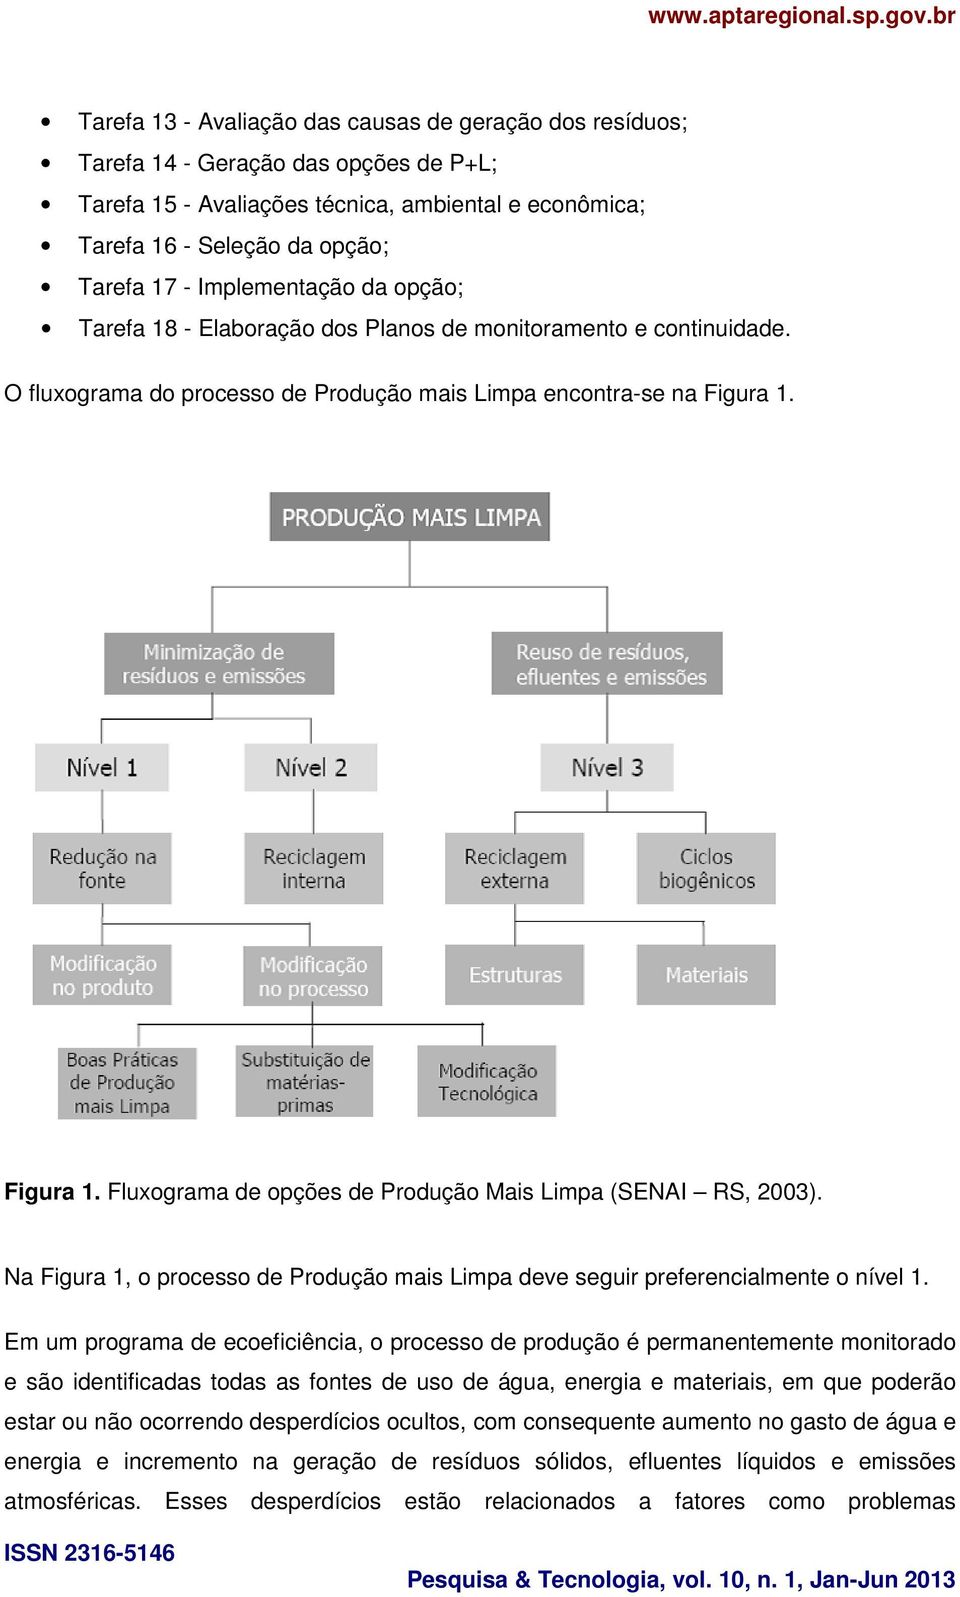 Figura 1. Fluxograma de opções de Produção Mais Limpa (SENAI RS, 2003). Na Figura 1, o processo de Produção mais Limpa deve seguir preferencialmente o nível 1.